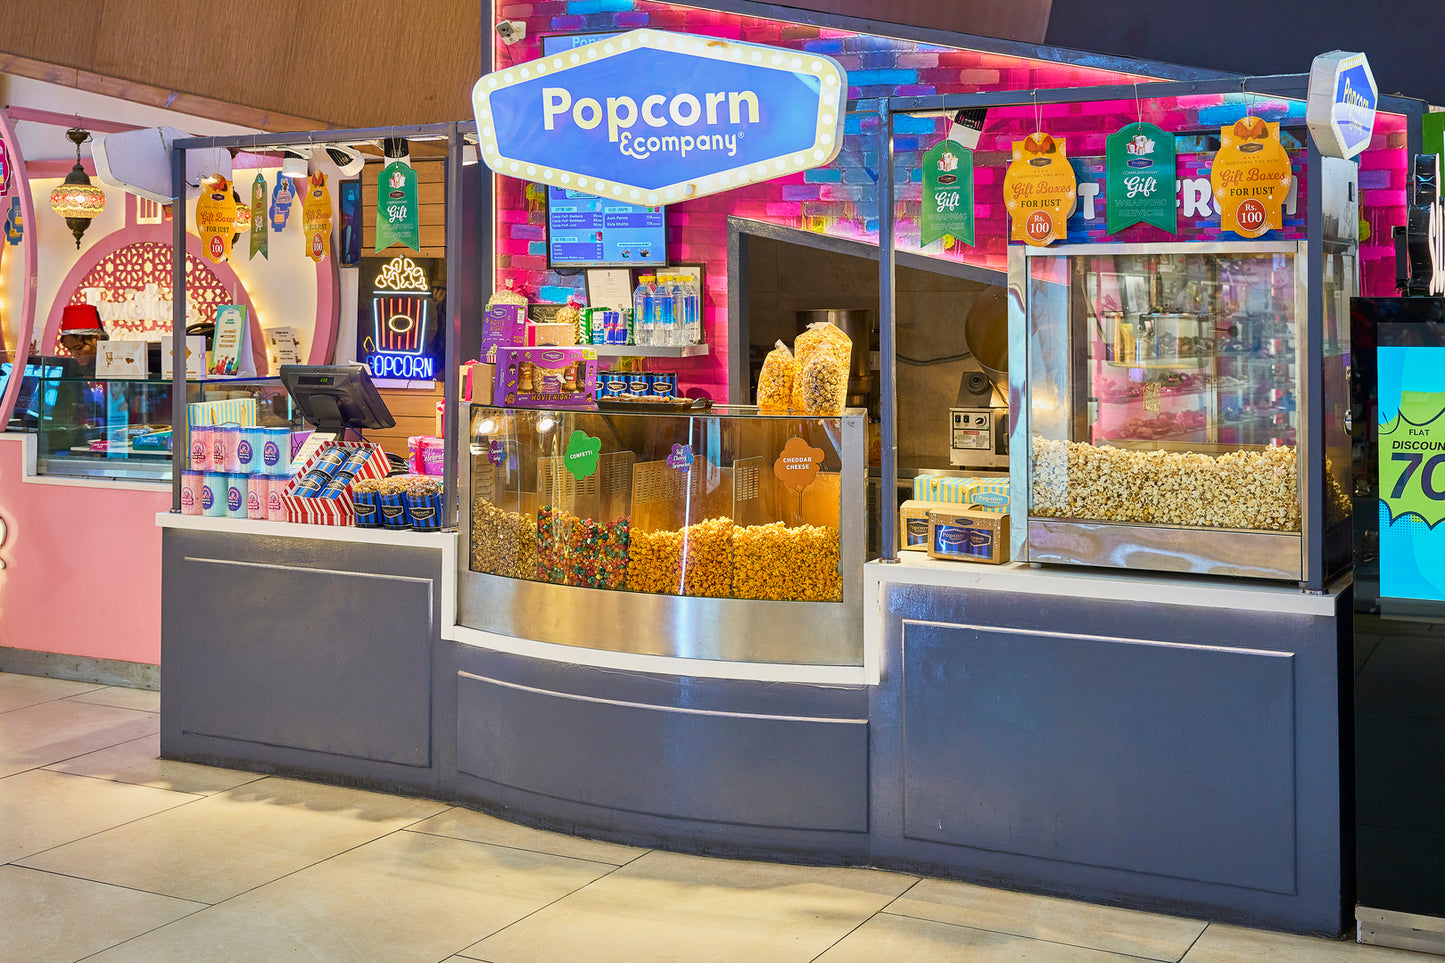 Popcorn & Company